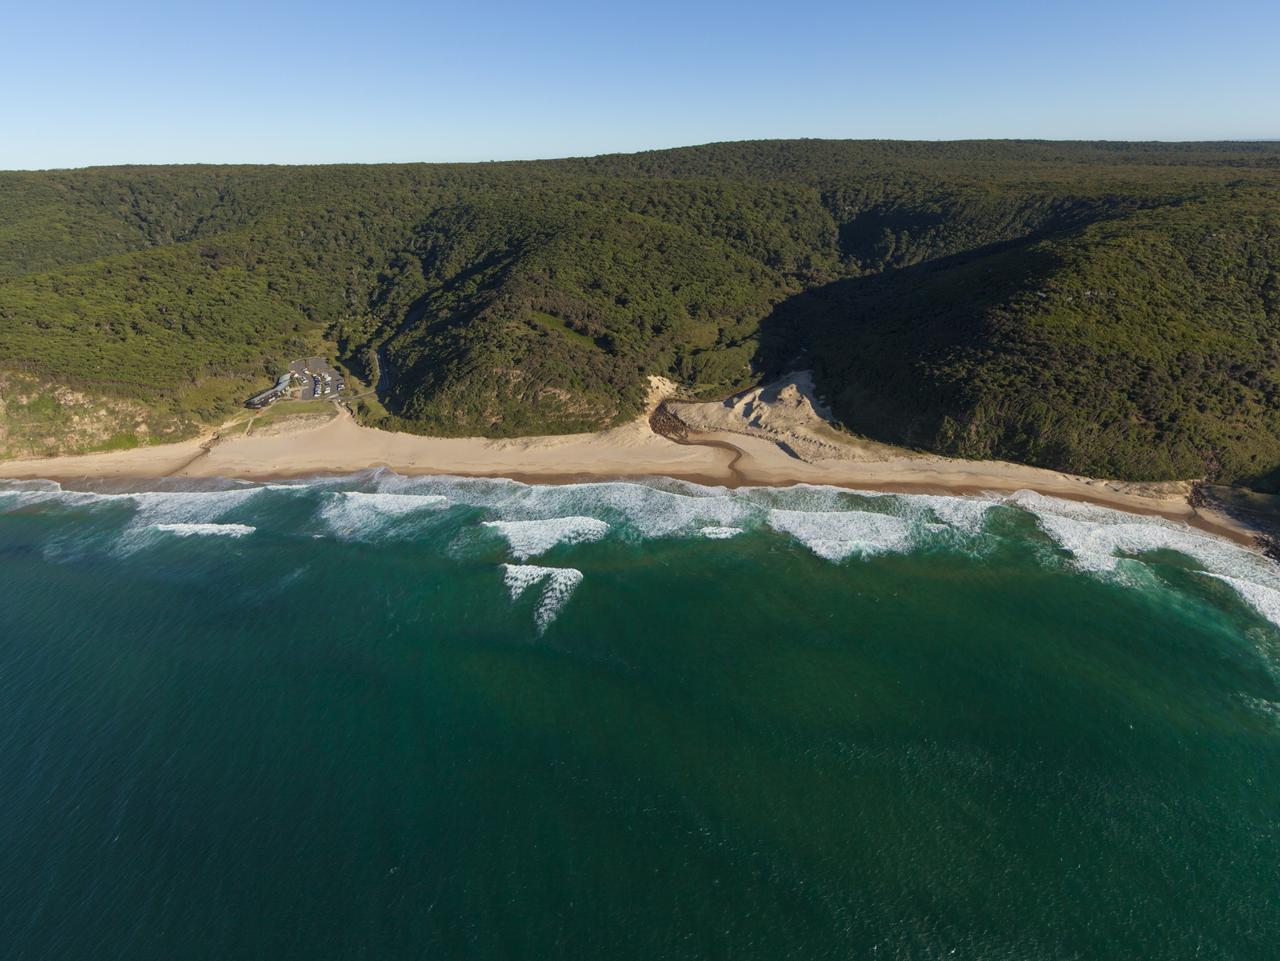 Garie Beach in Sydney was 12th on Australia's 101 Best Beaches list